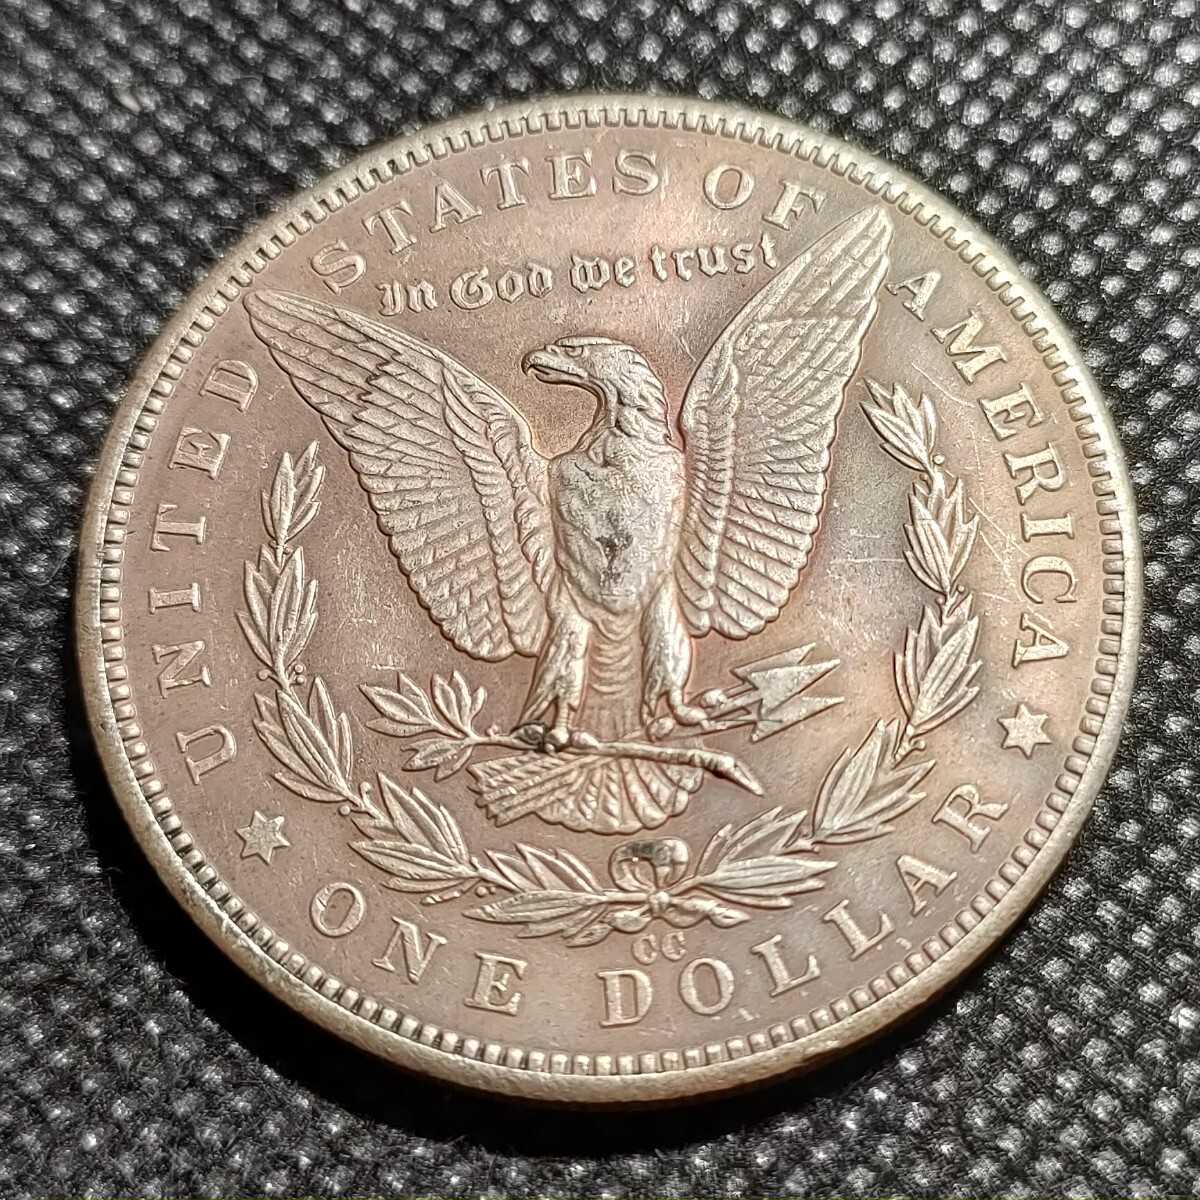 7529 アメリカ古銭 ルンペン 約38mm イーグル チャレンジコイン ゴルフマーカー コイン アンティーク ホーボーの画像2